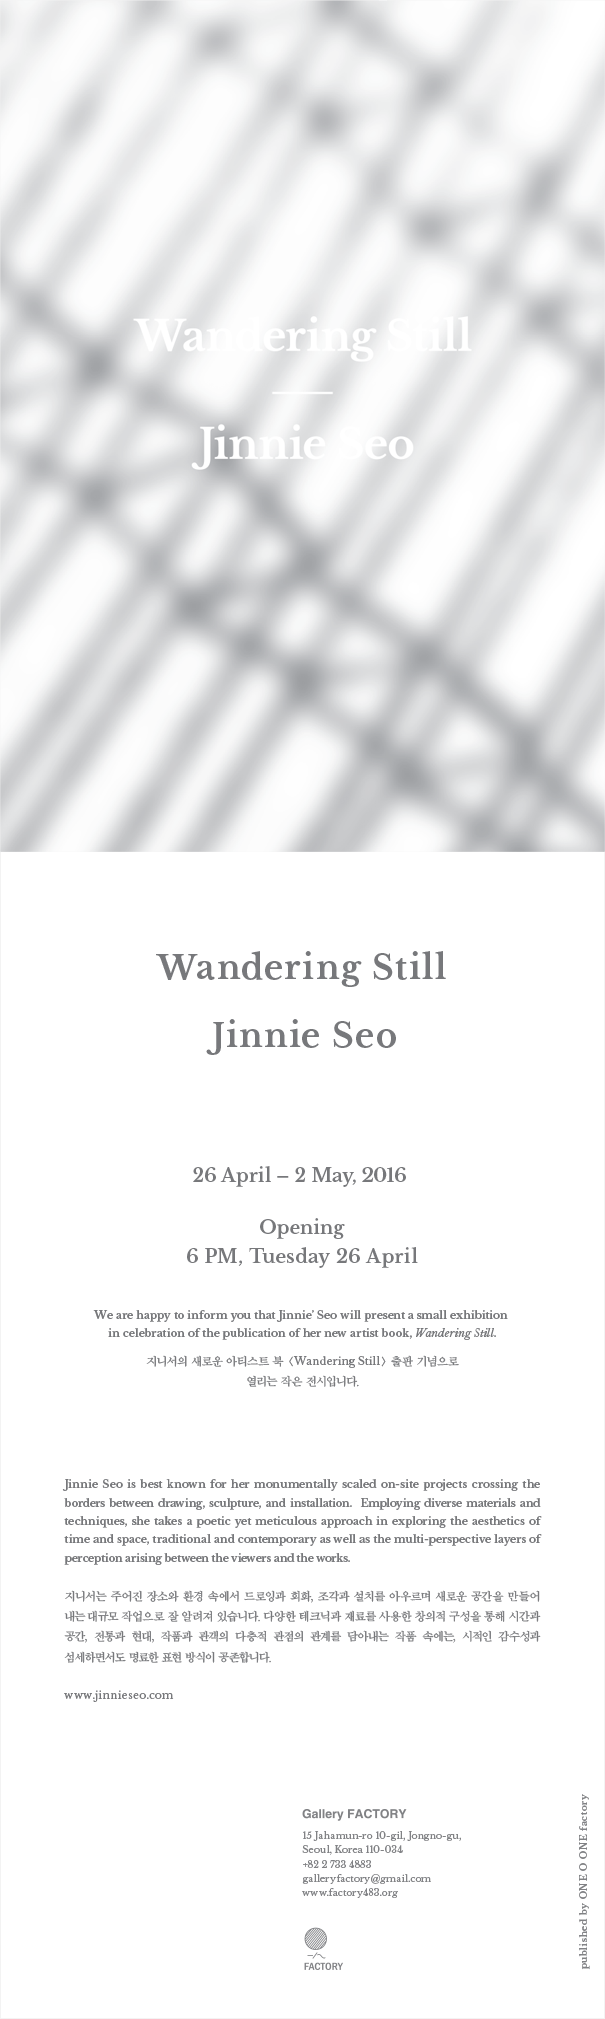 jinnie seo - Wandering Still - 0408 - v3.png